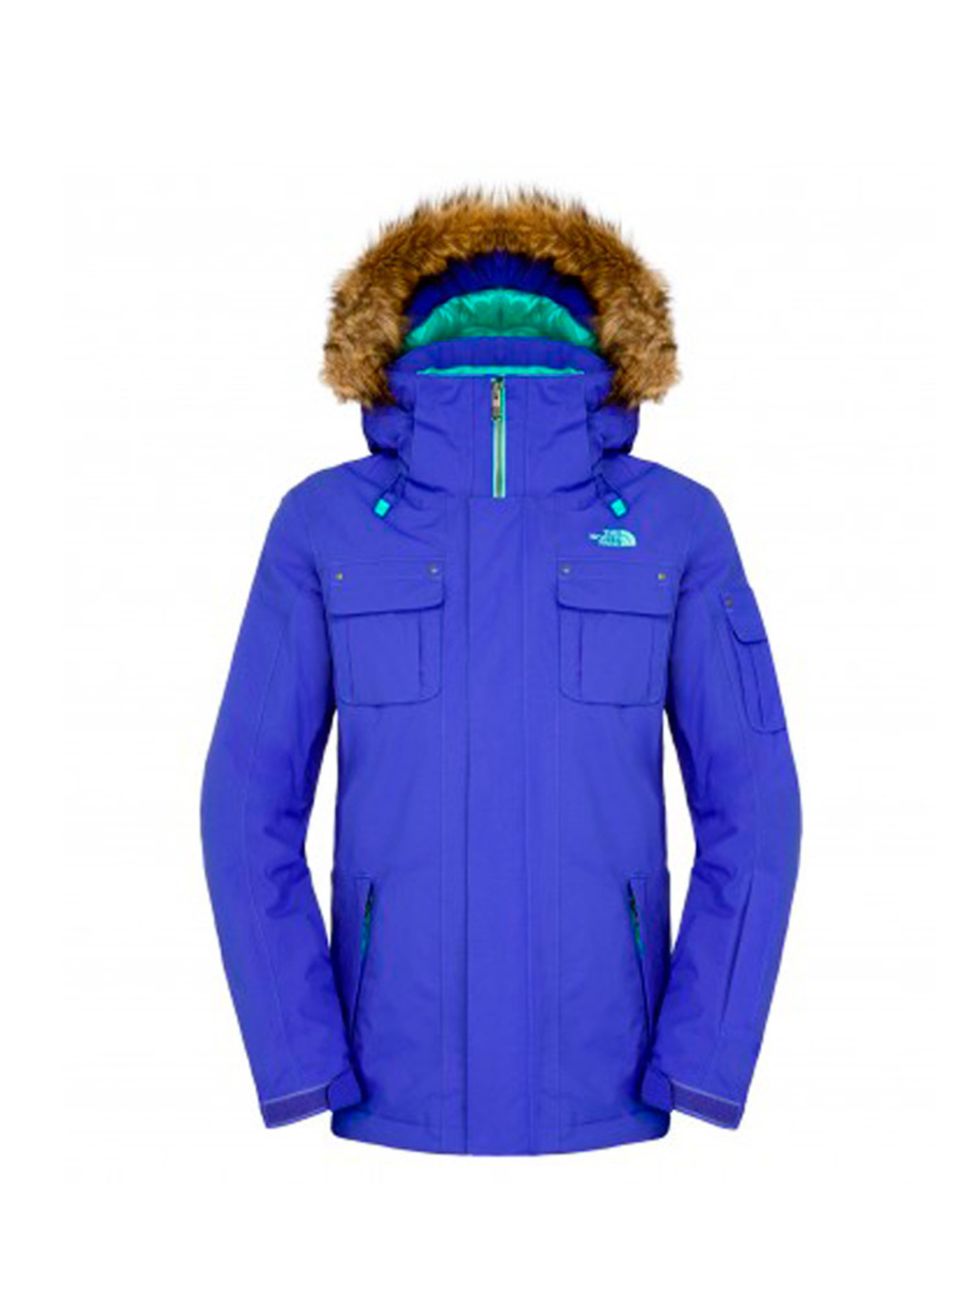 <p><a href="http://www.thenorthface.co.uk/tnf-uk-en/women-baker-jacket/p103895.html" target="_blank">North Face</a> jacket, £250</p>